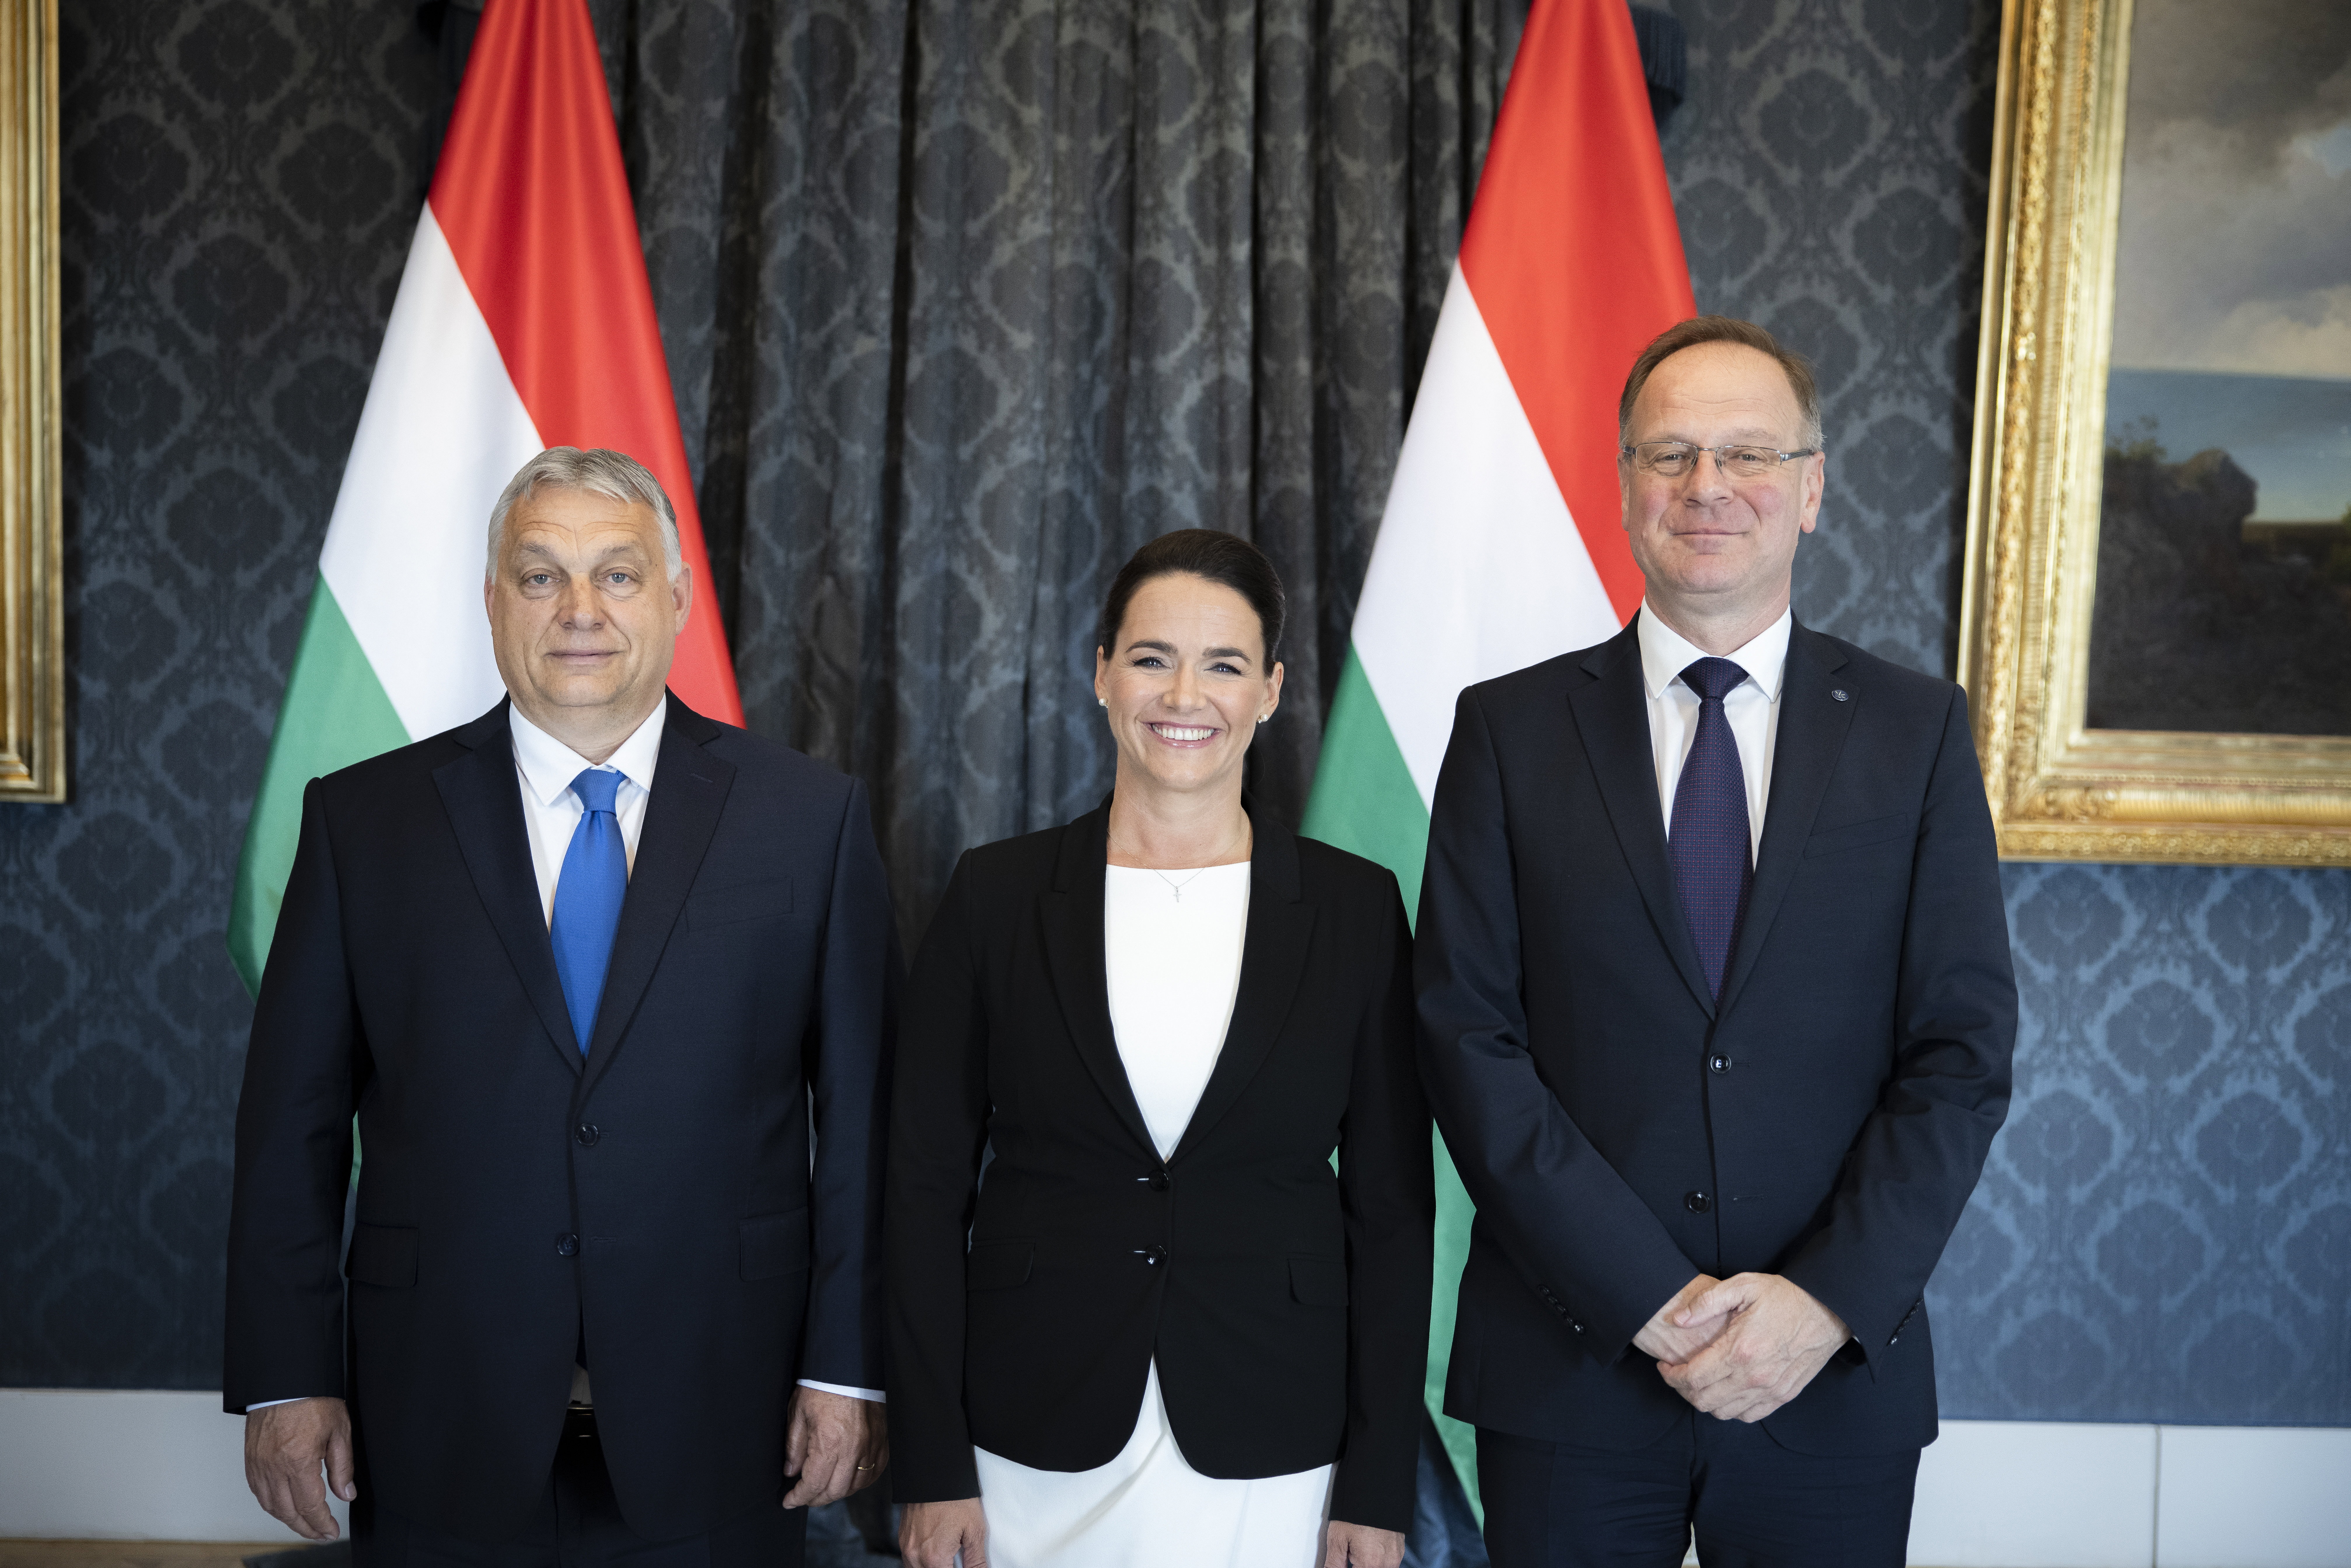 Leleplezték Orbánék tervét: Ennyit ér a fideszes kompromisszum